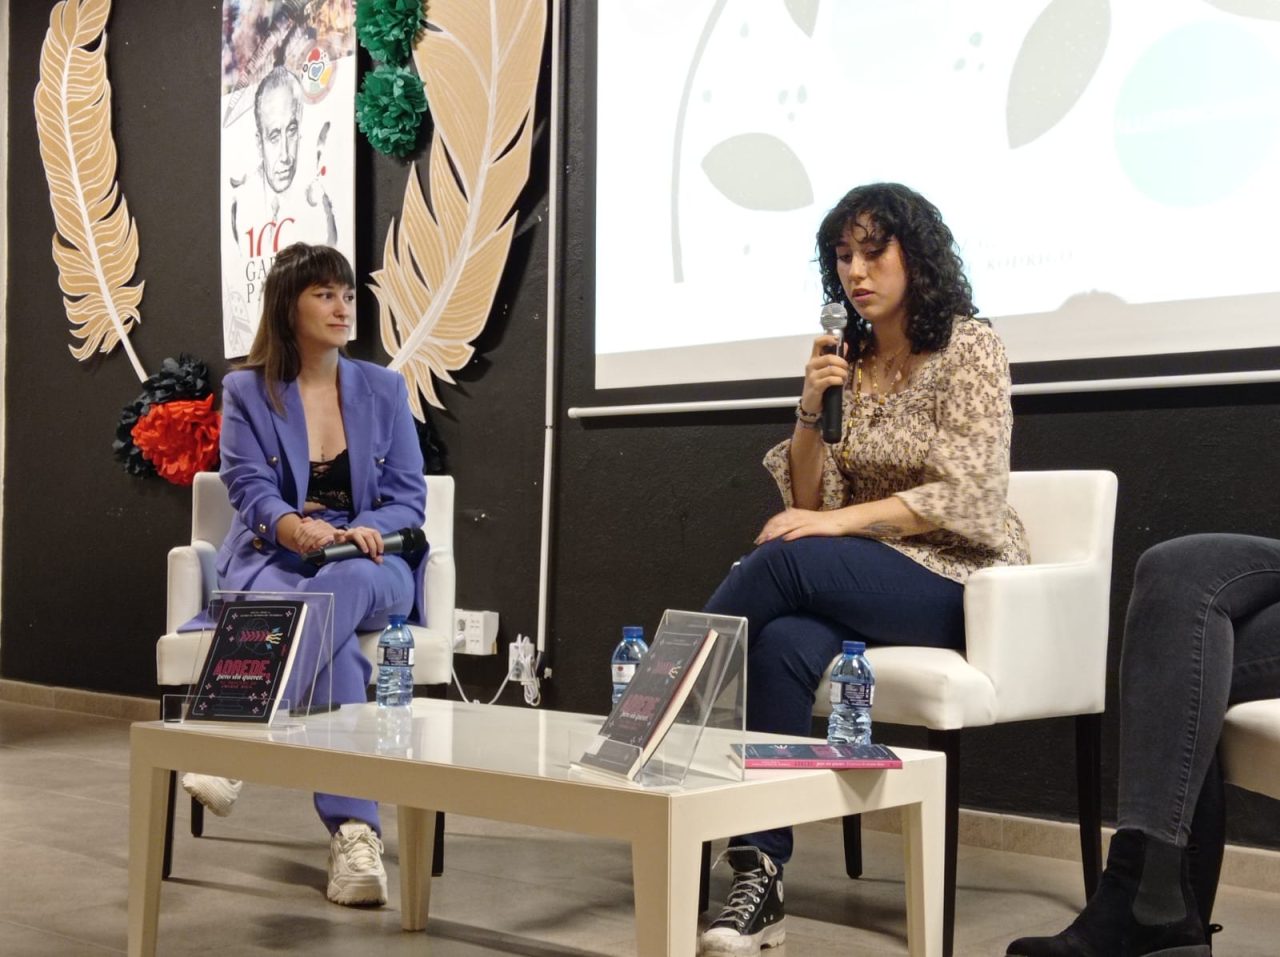 Elena Díaz, poeta de Tomelloso: "La poesía está muy maltratada hoy en día"